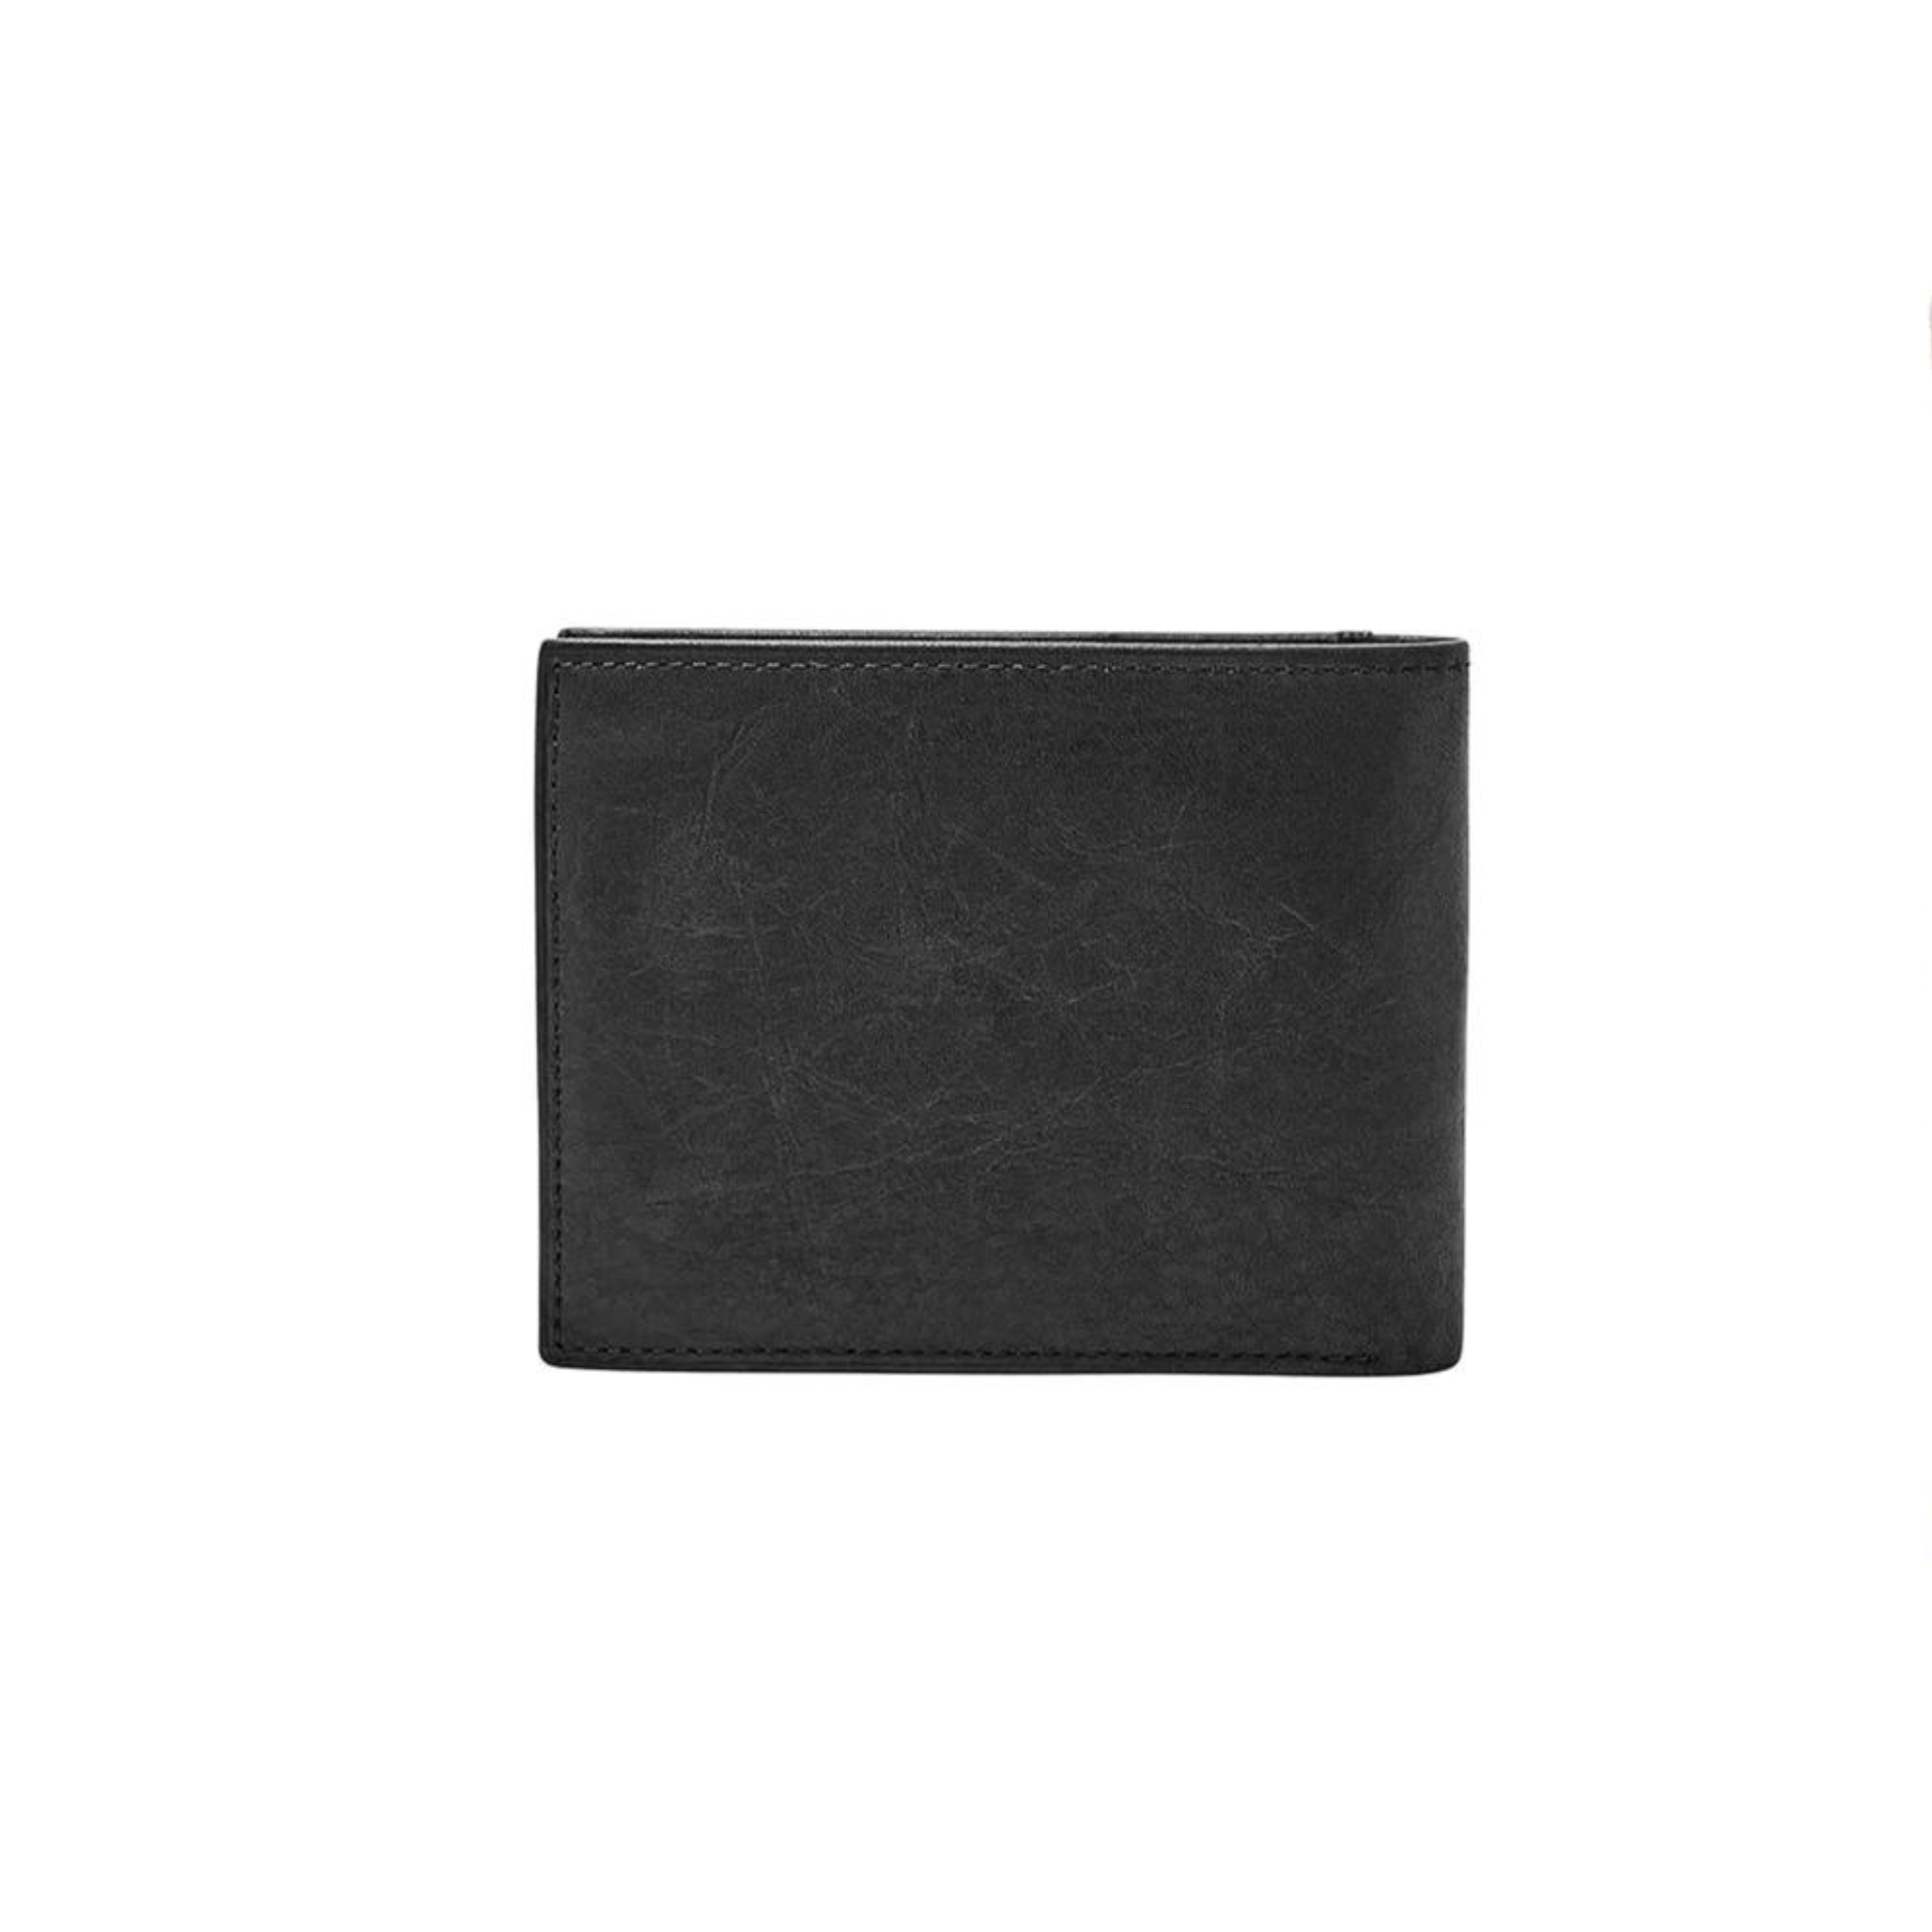 Fossil Men's Ingram Leather Bifold Wallet With Flip Id Window